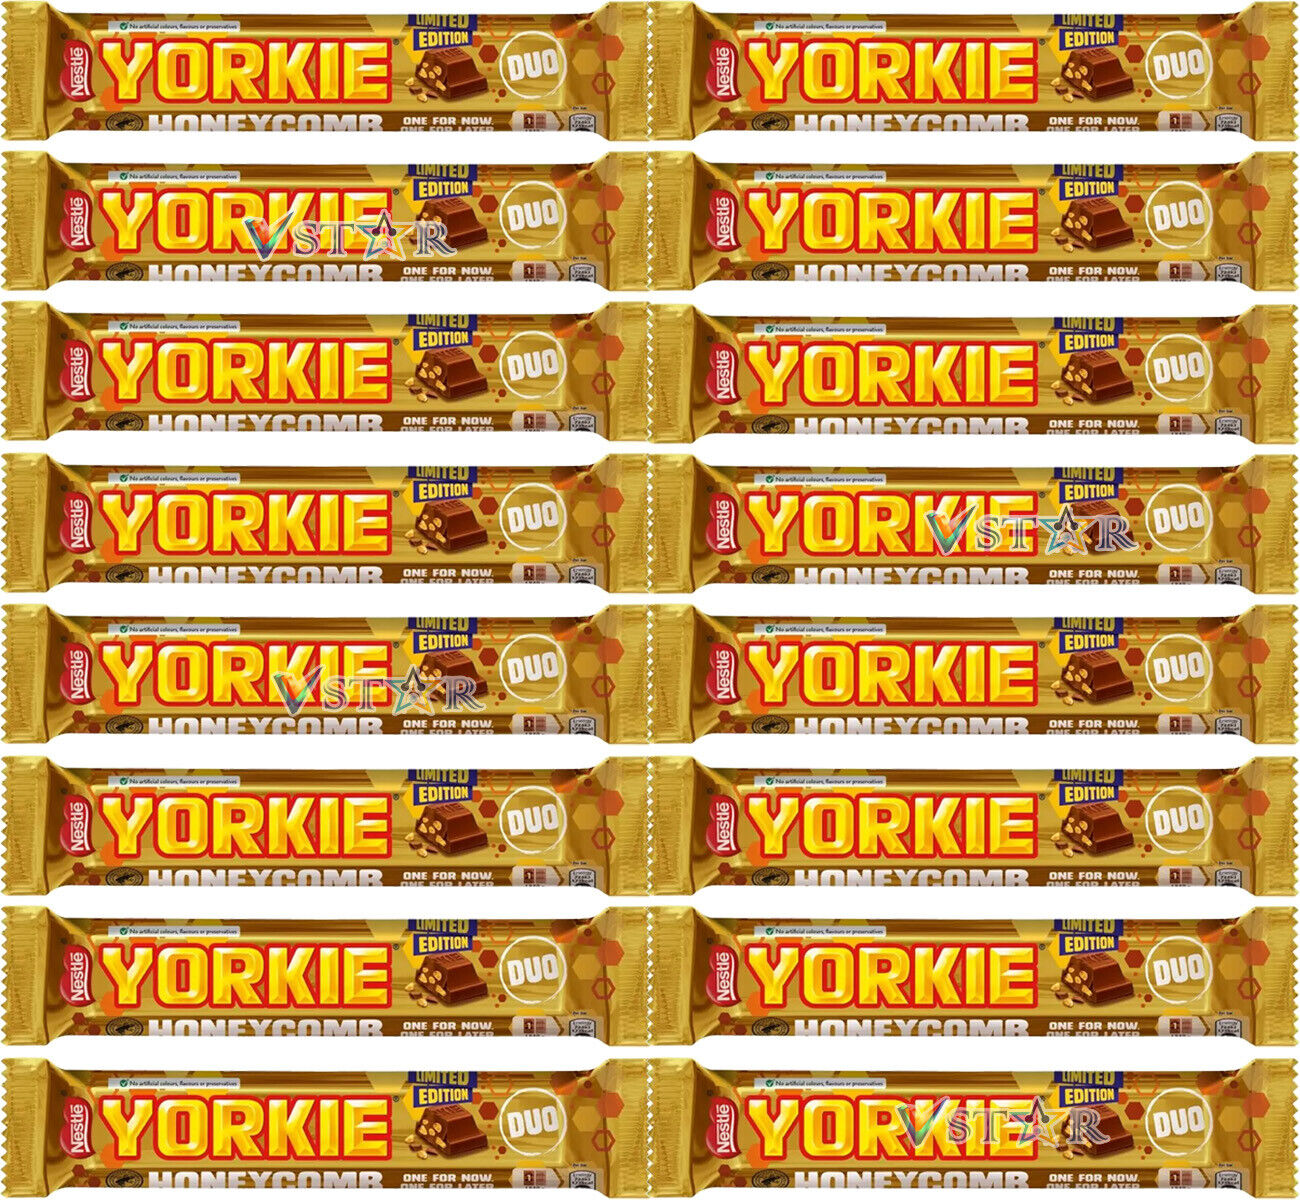 Yorkie Honeycomb Milk Chocolate DUO Bar 66g (Box Of 24)